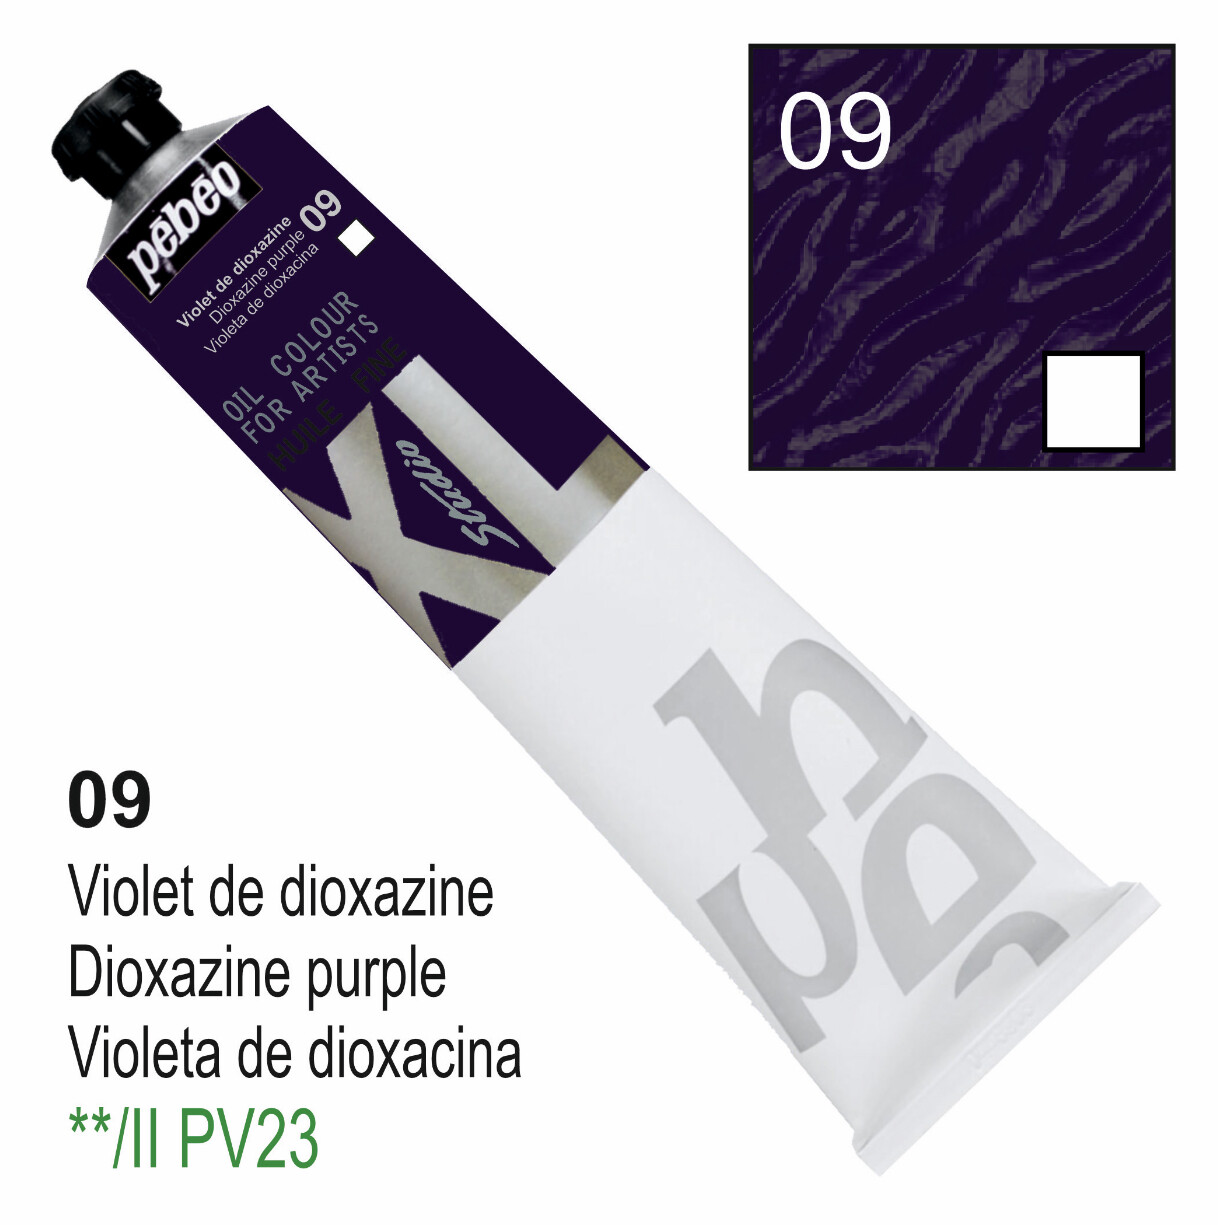 XL Studio Oil Colors Fine - Dioxazine purple No. 09, 200 ml Tube